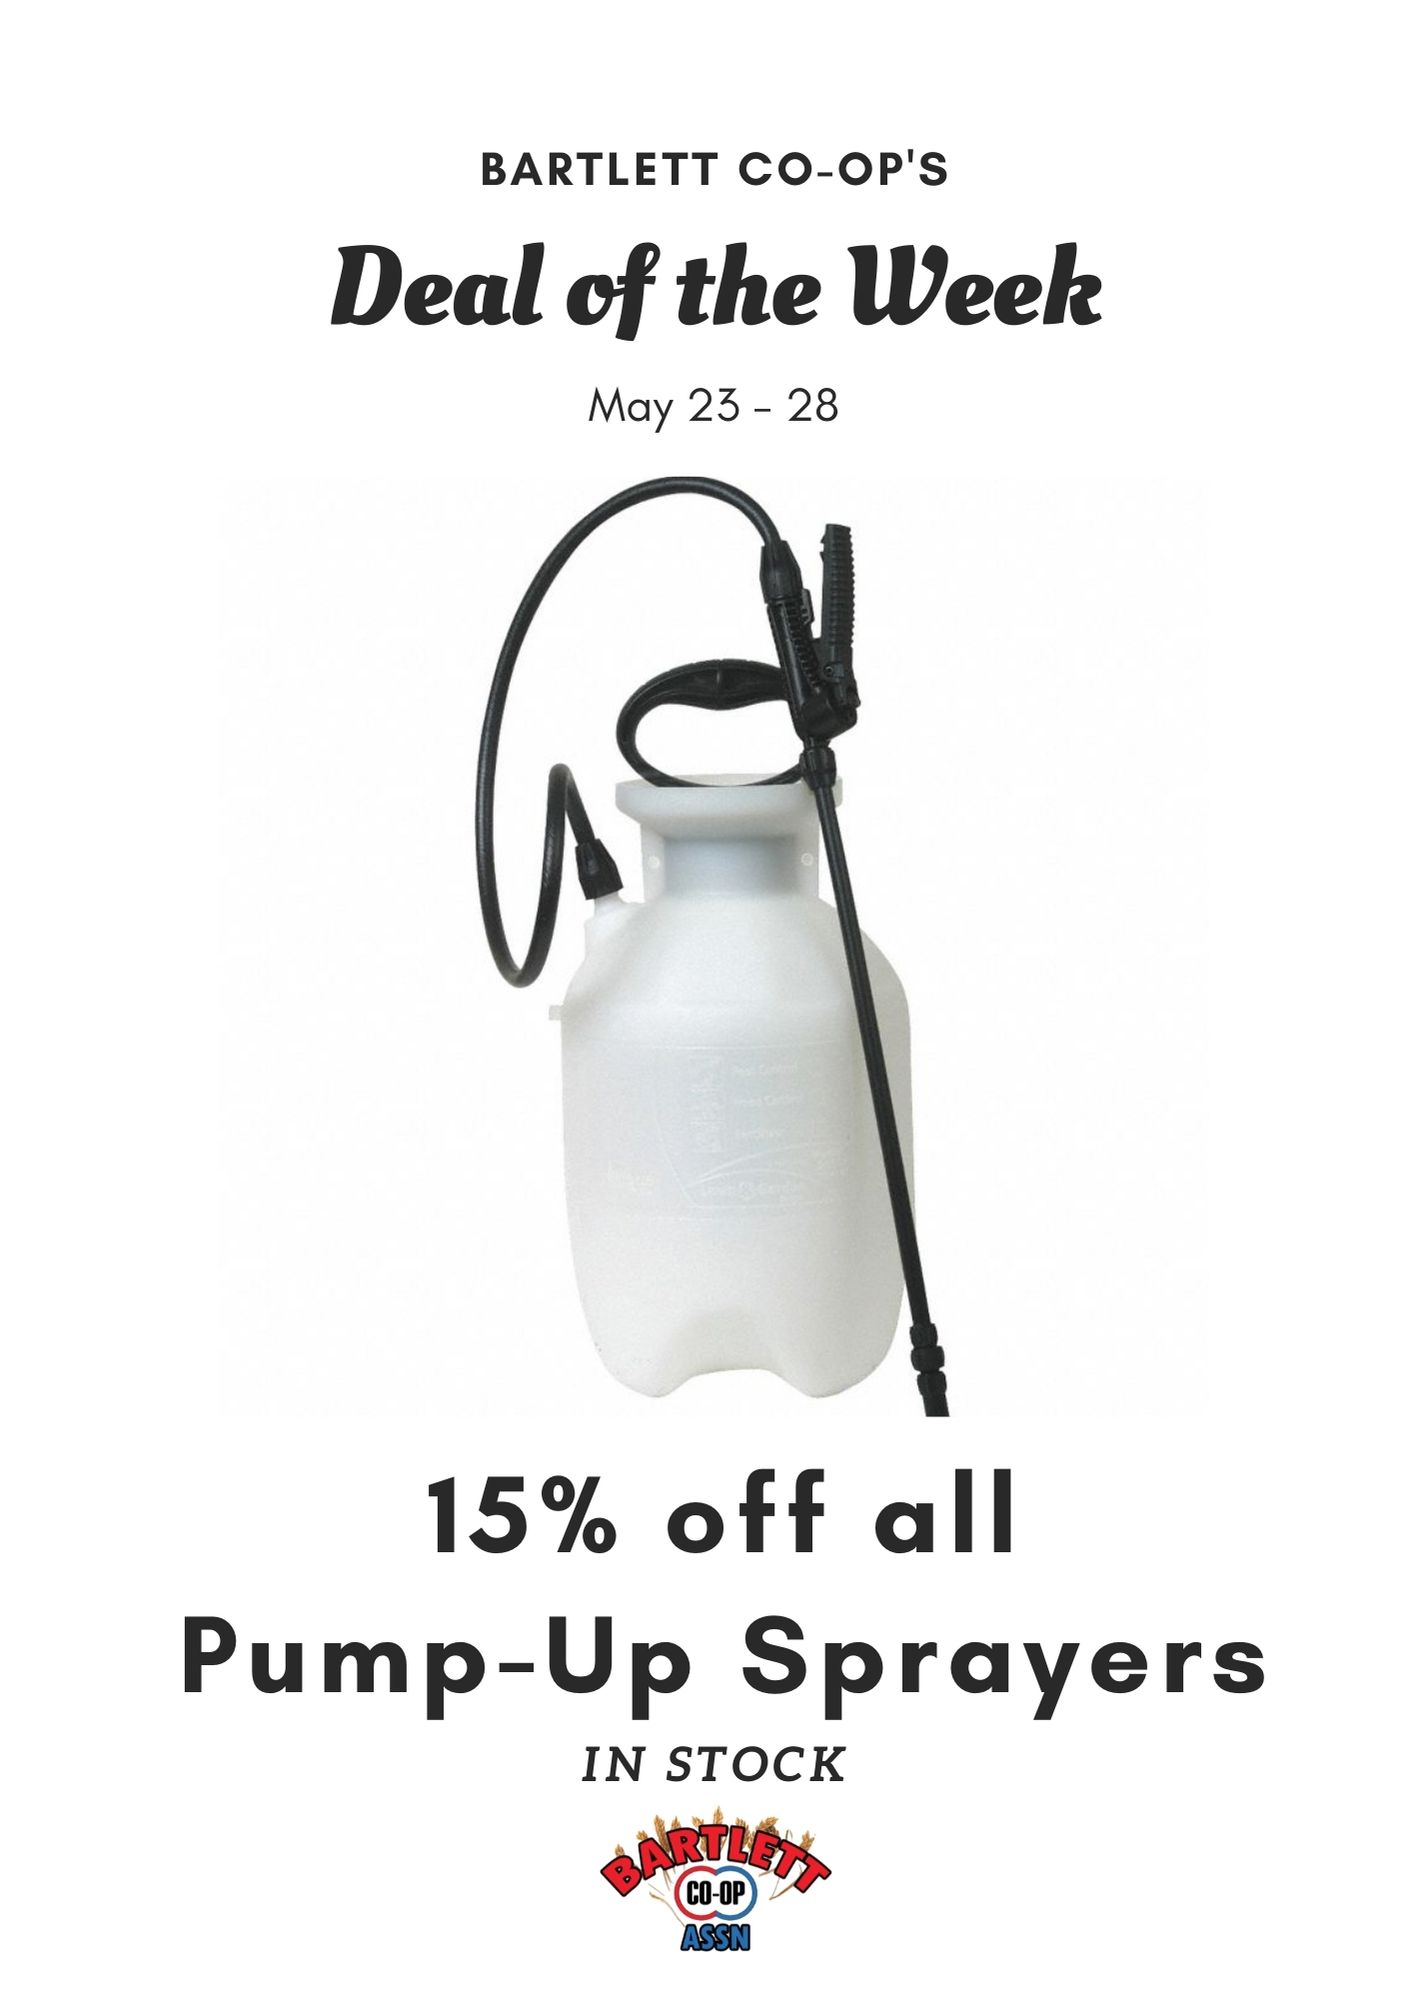 Pump_Up_Sprayers_deal.jpg